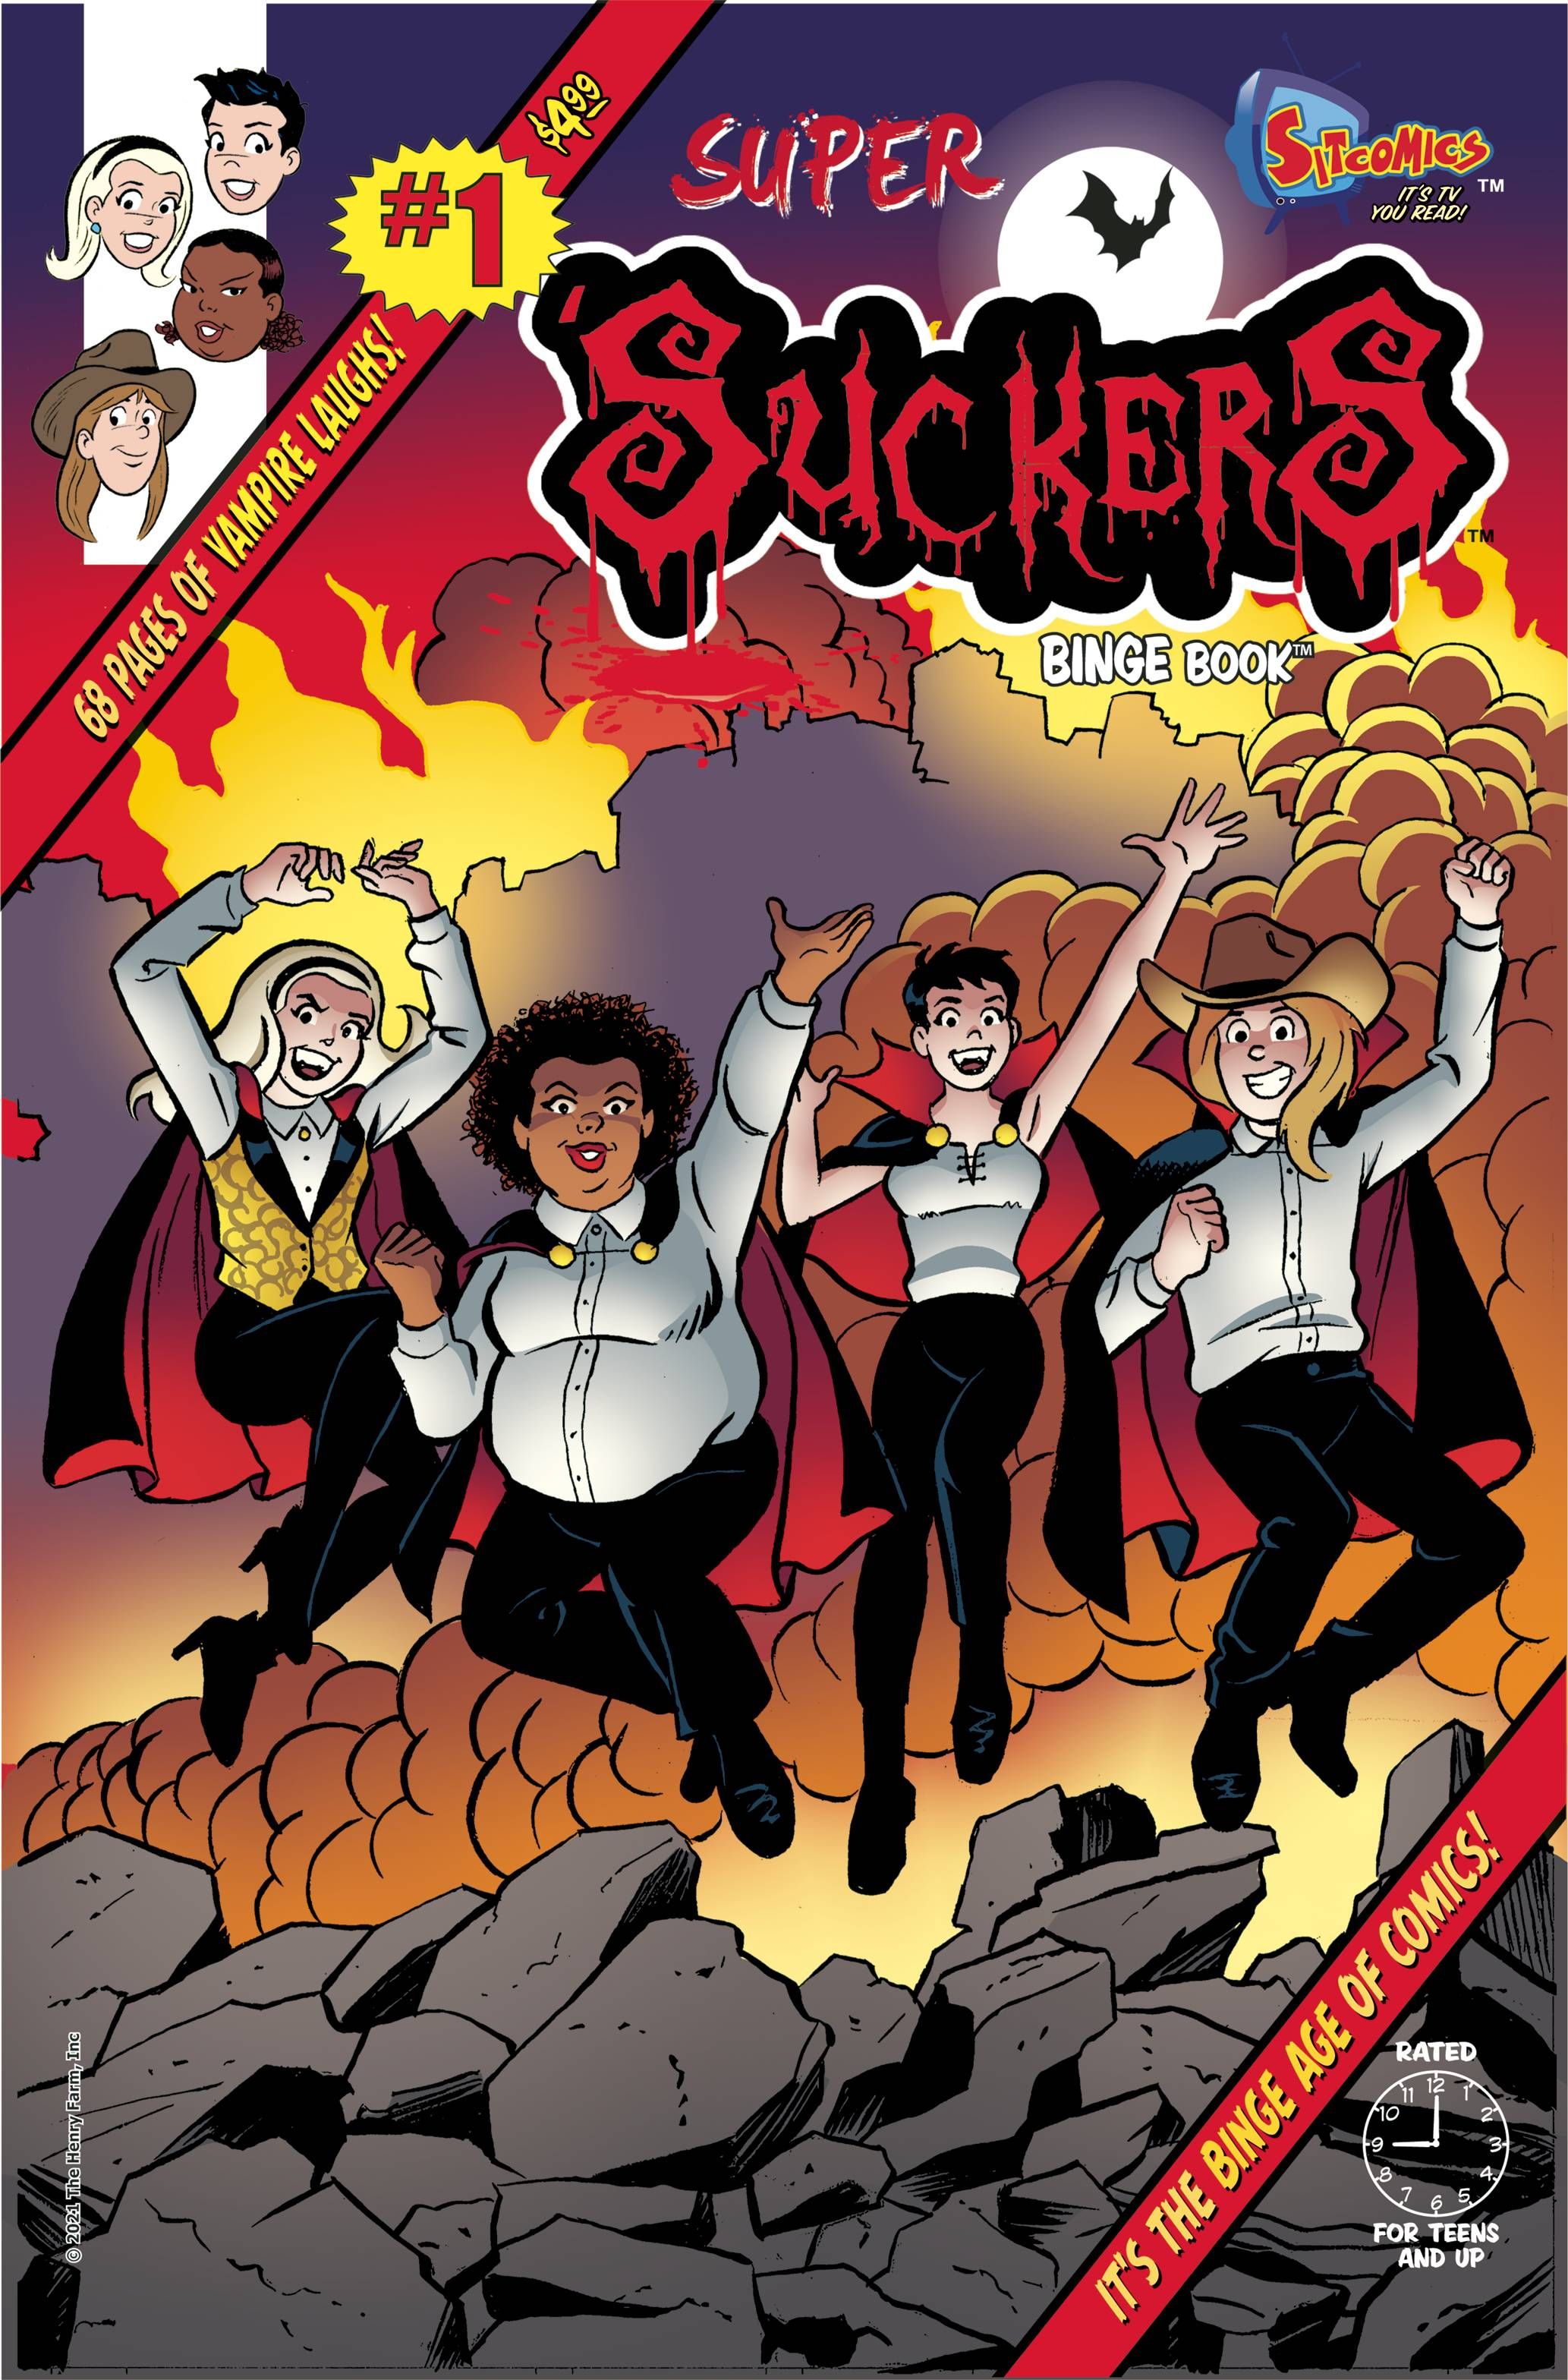 Super 'Suckers Binge Book Comic